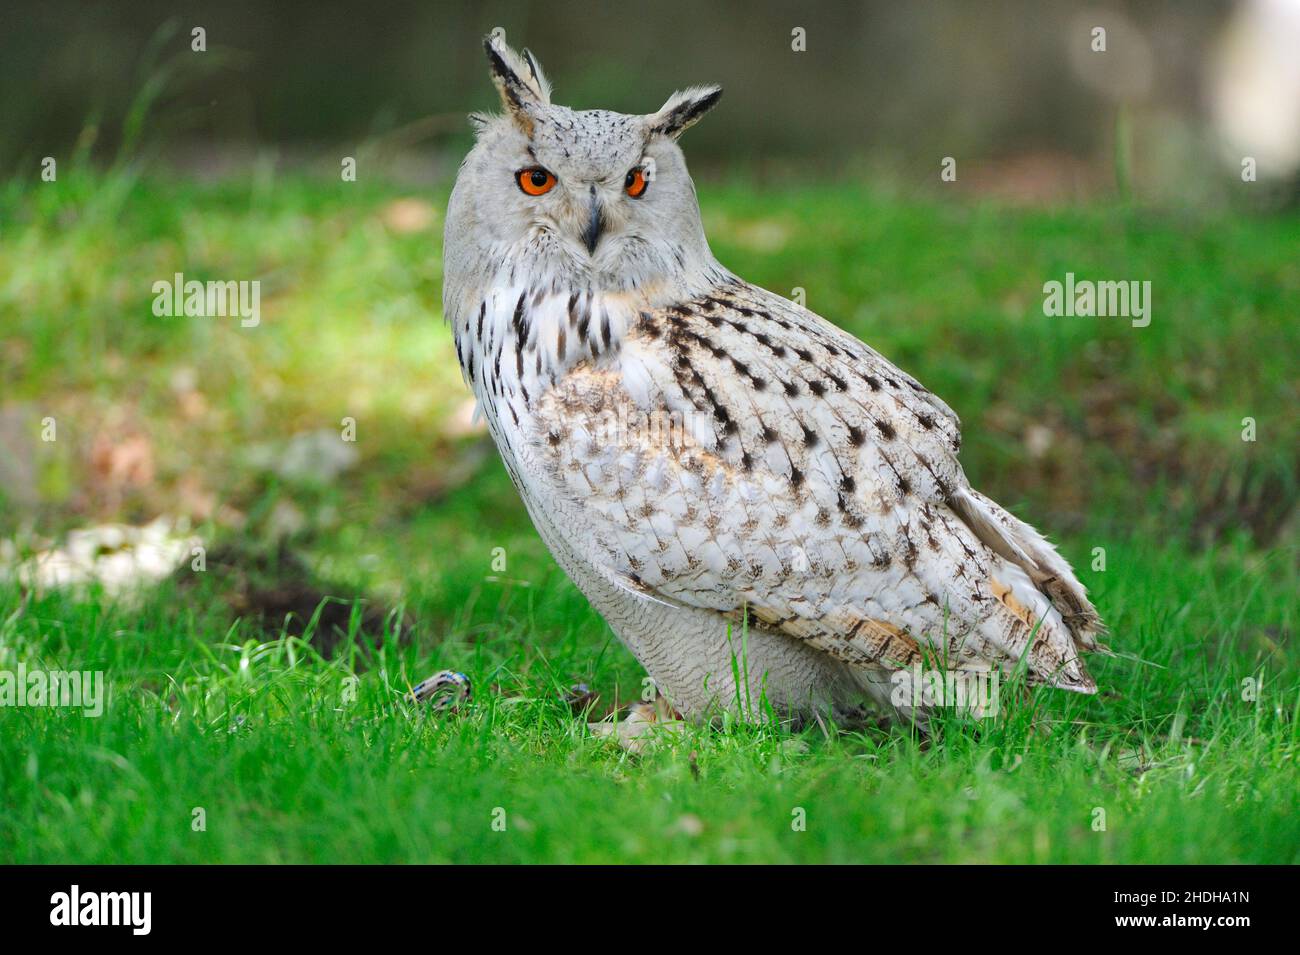 eagle owl, owl, siberian eagle owl, eagle owls, owls, siberian eagle owls  Stock Photo - Alamy